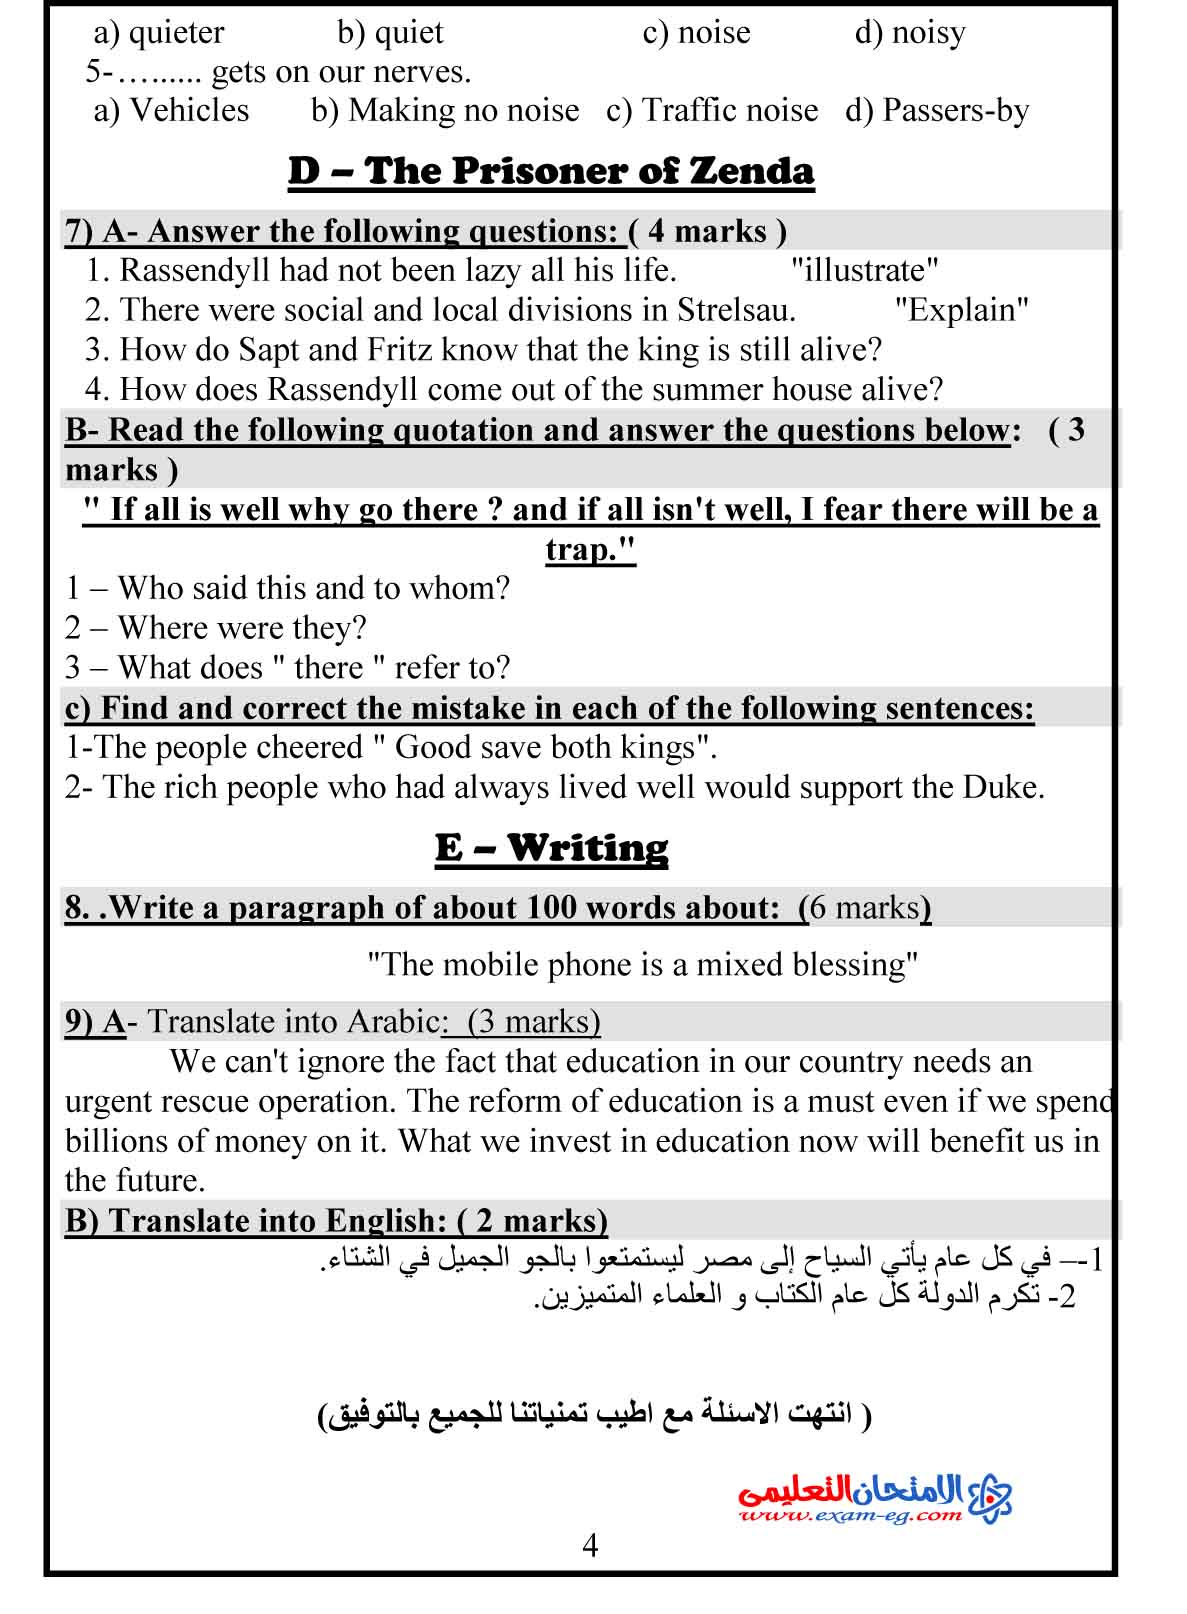 امتحان لغة انجليزية 2 - الامتحان التعليمى-4